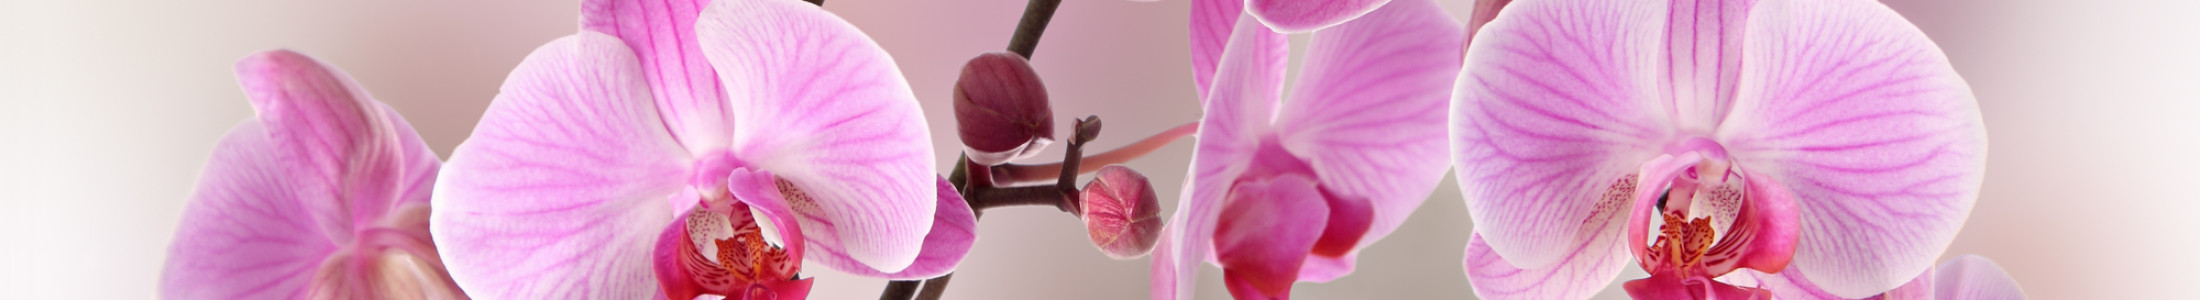 Cymbidium Orchids, Dendrobium Orchids